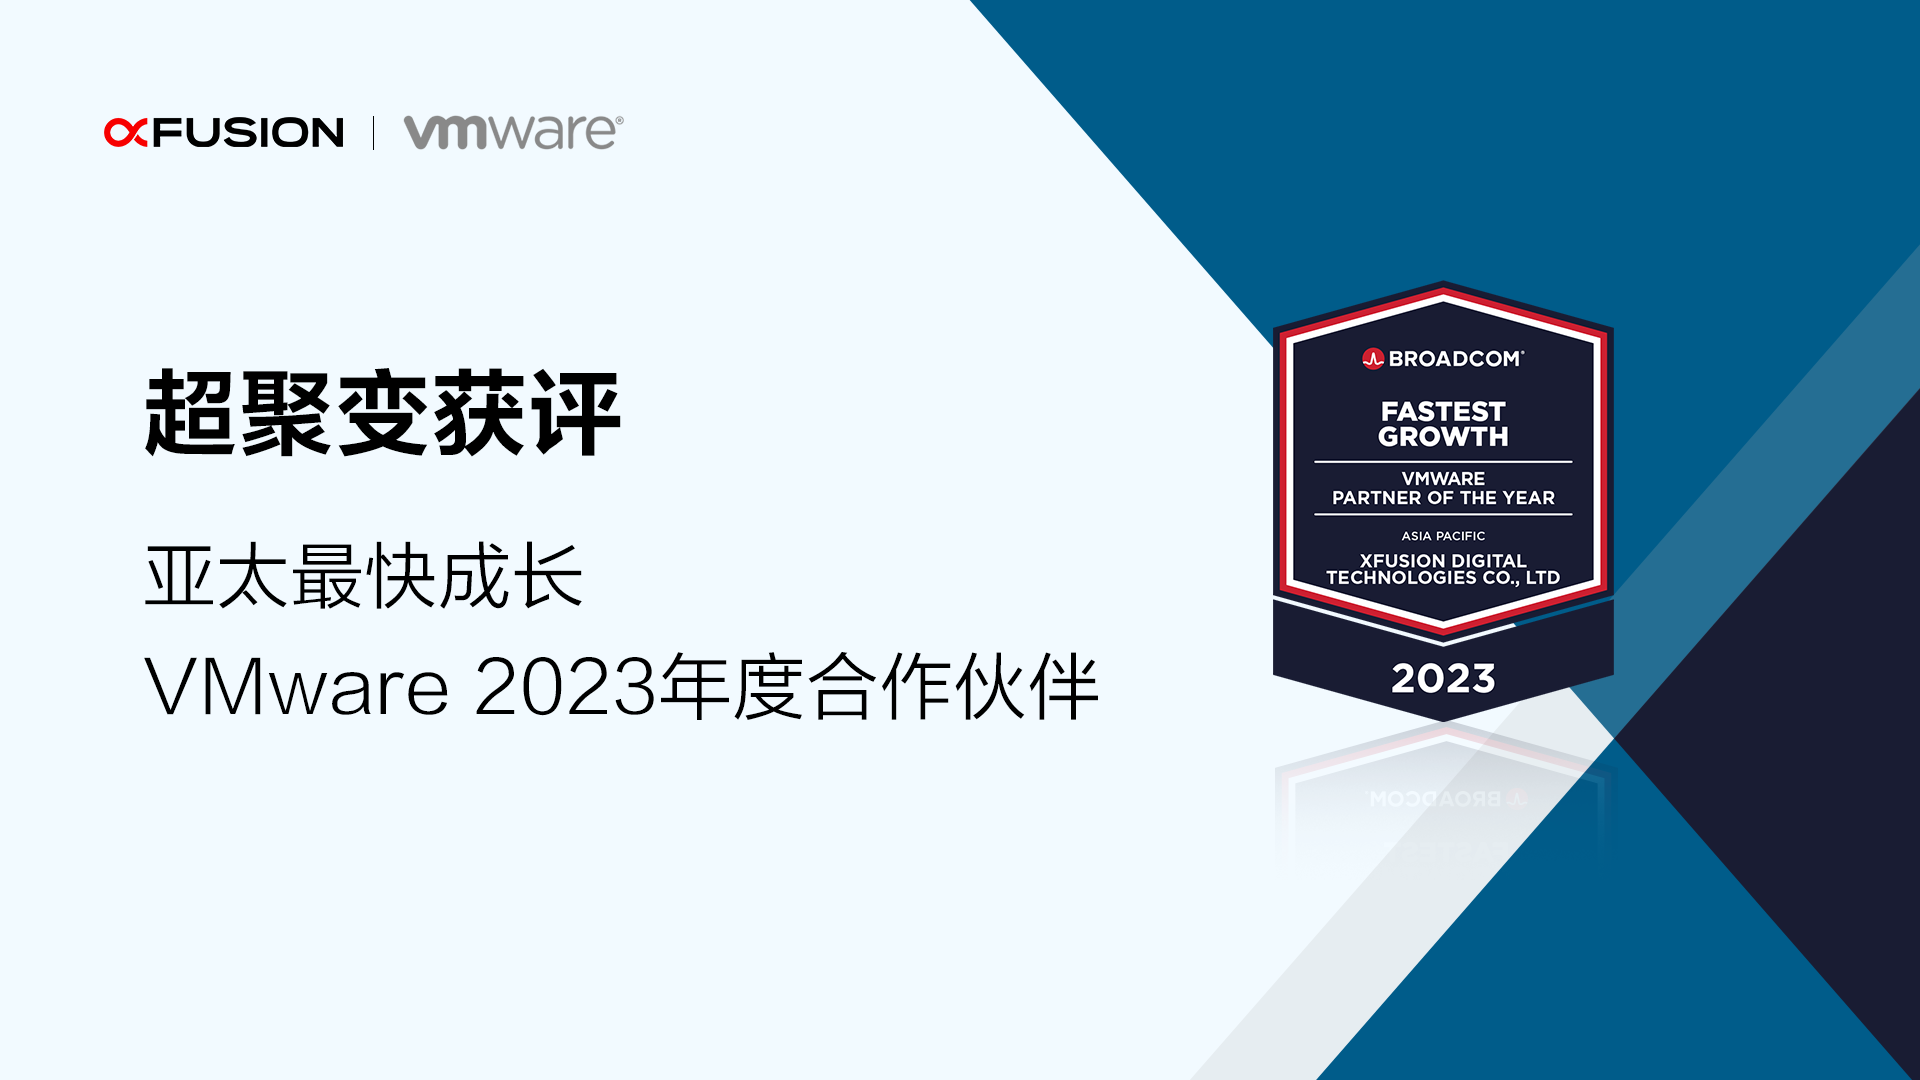 超聚变获评“亚太最快成长 – VMware 2023年度合作伙伴”